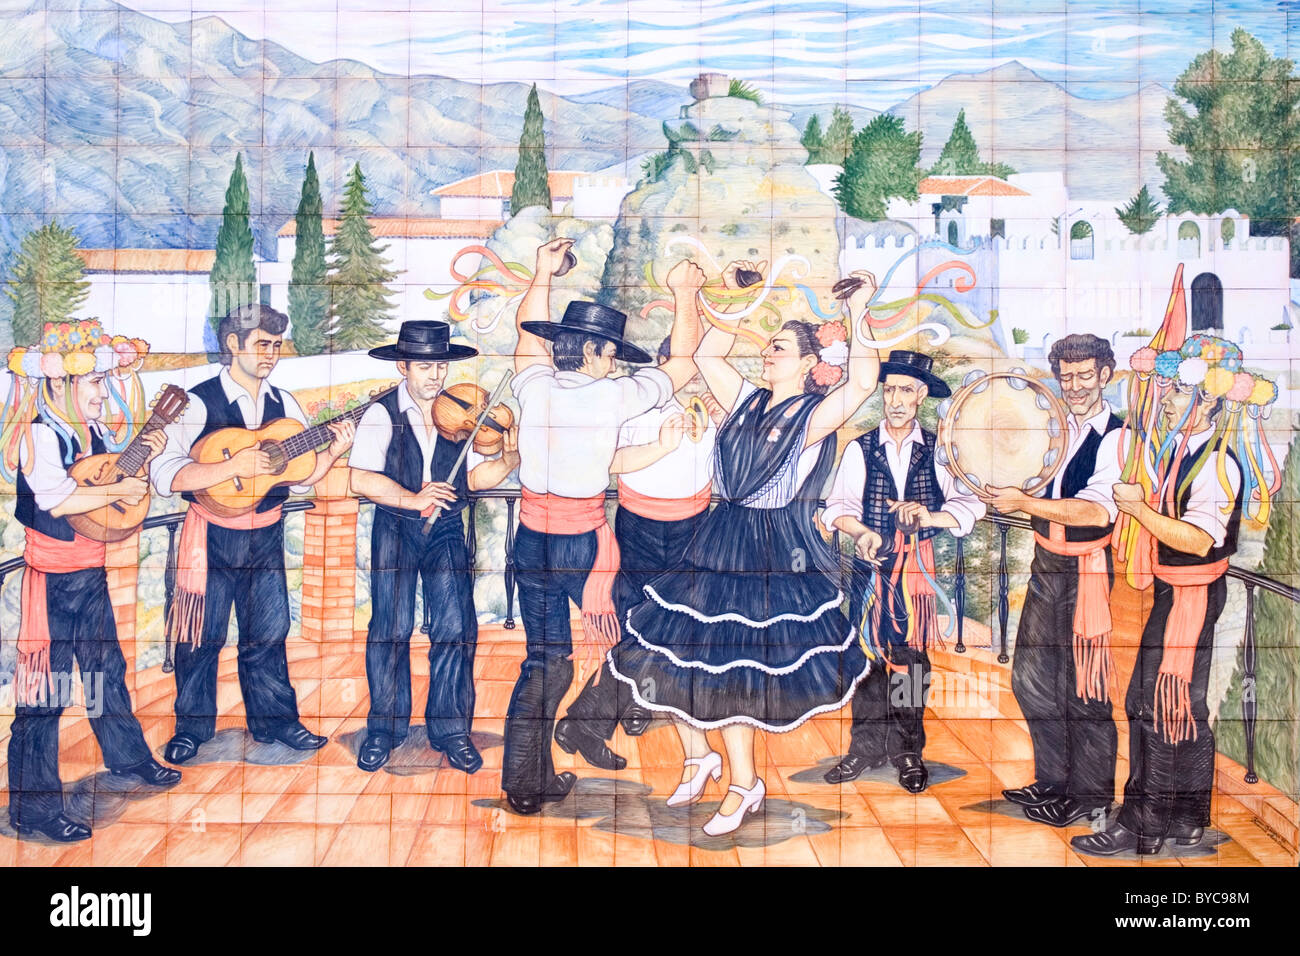 Comares, Provinz Malaga, Andalusien, Spanien. Keramikfliesen, die Darstellung der Verdiales Tänzer und Musiker, die typisch für die Gegend. Stockfoto